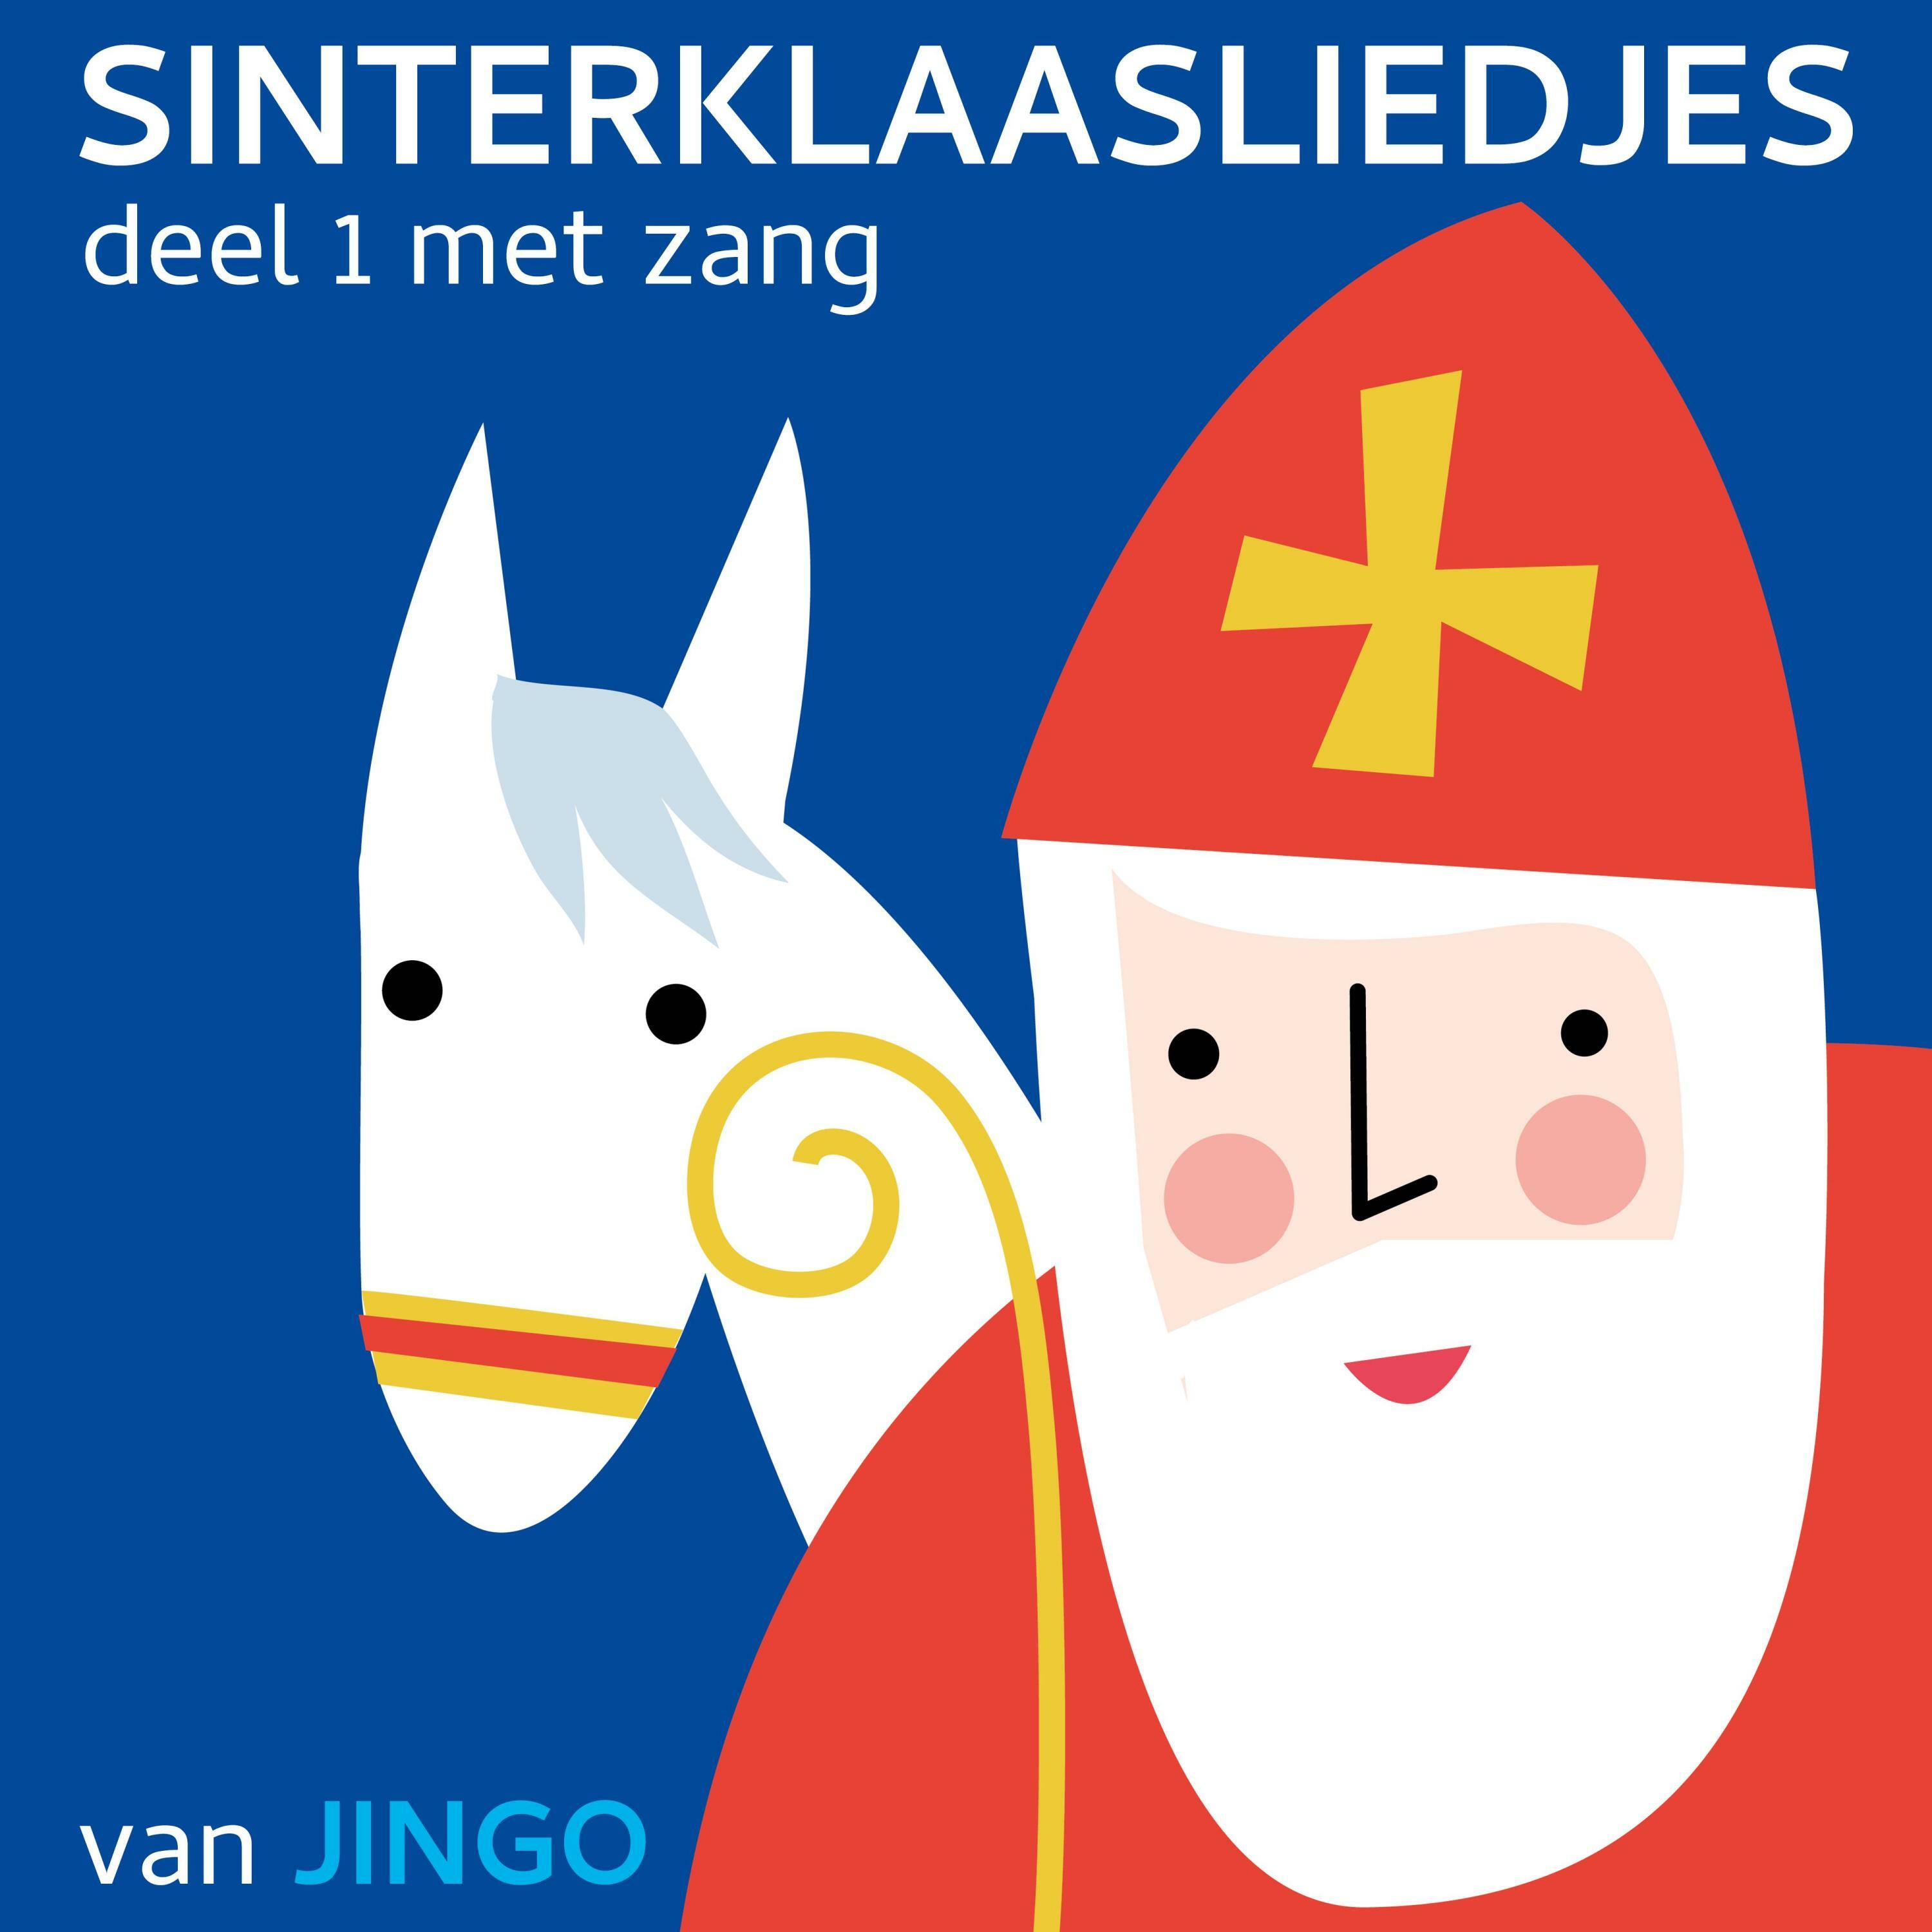 Oppositie Commotie Barmhartig Sinterklaasliedjes van JINGO - Sinterklaasliedjes Deel 1 Met Zang | iHeart